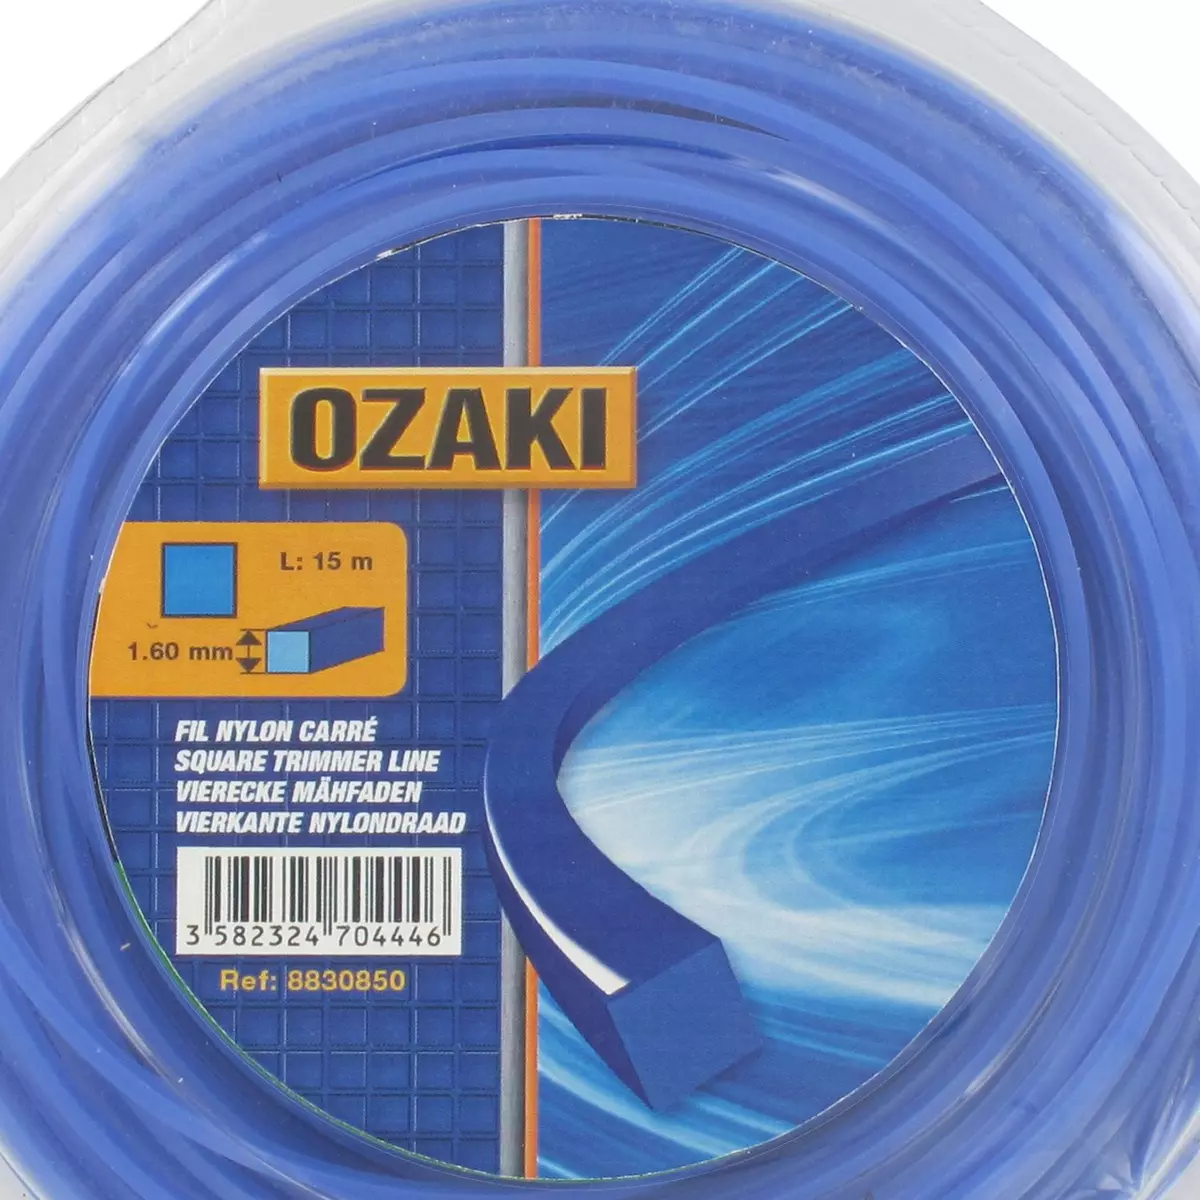 OZAKI Fil nylon carré d. 1,30 mm